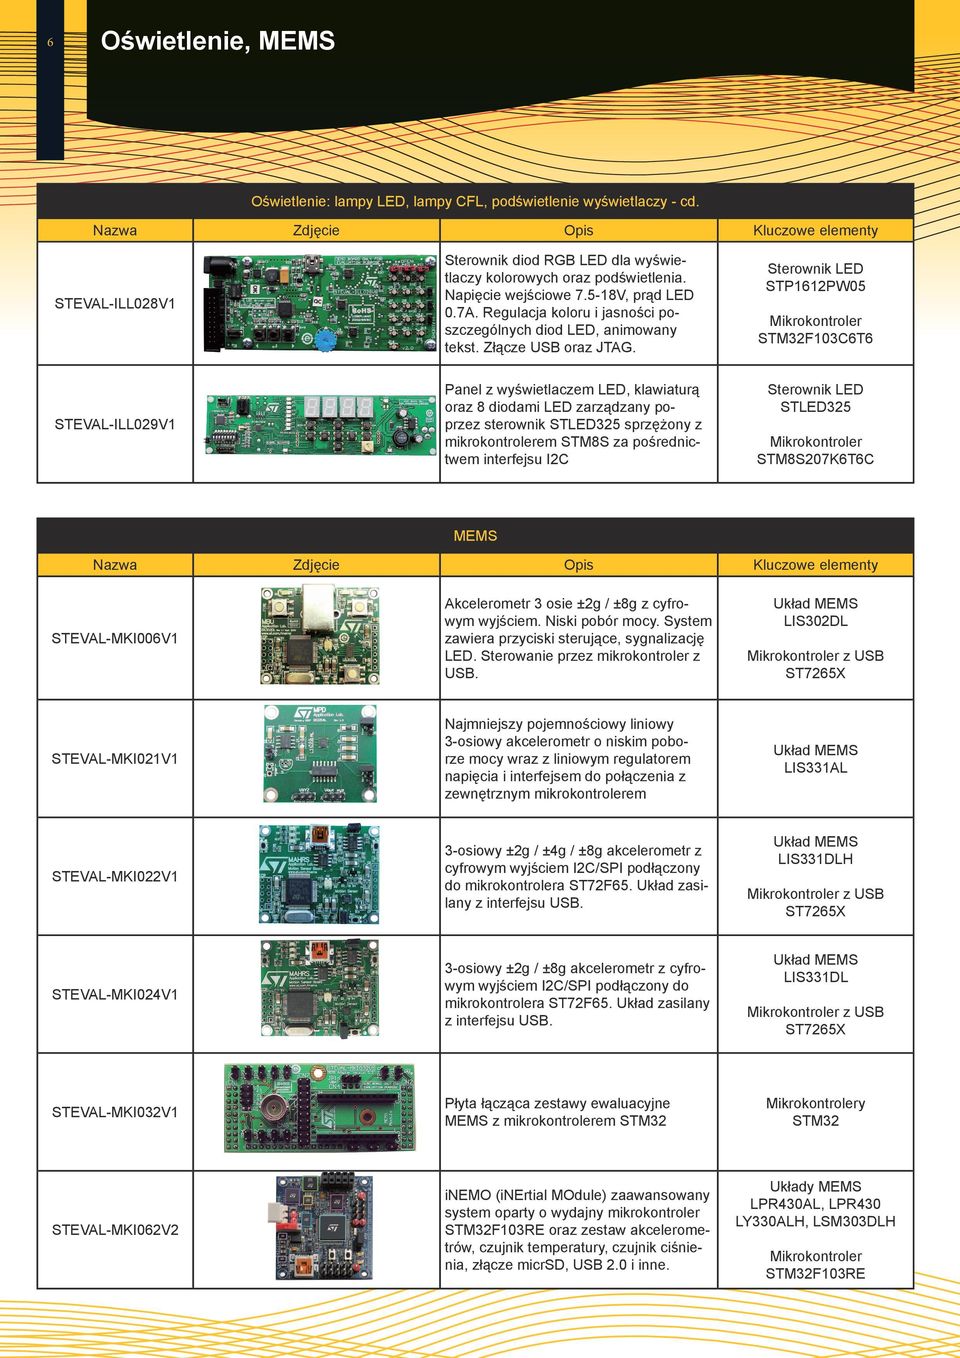 Sterownik LED STP1612PW05 STM32F103C6T6 STEVAL-ILL029V1 Panel z wyświetlaczem LED, klawiaturą oraz 8 diodami LED zarządzany poprzez sterownik STLED325 sprzężony z mikrokontrolerem STM8S za